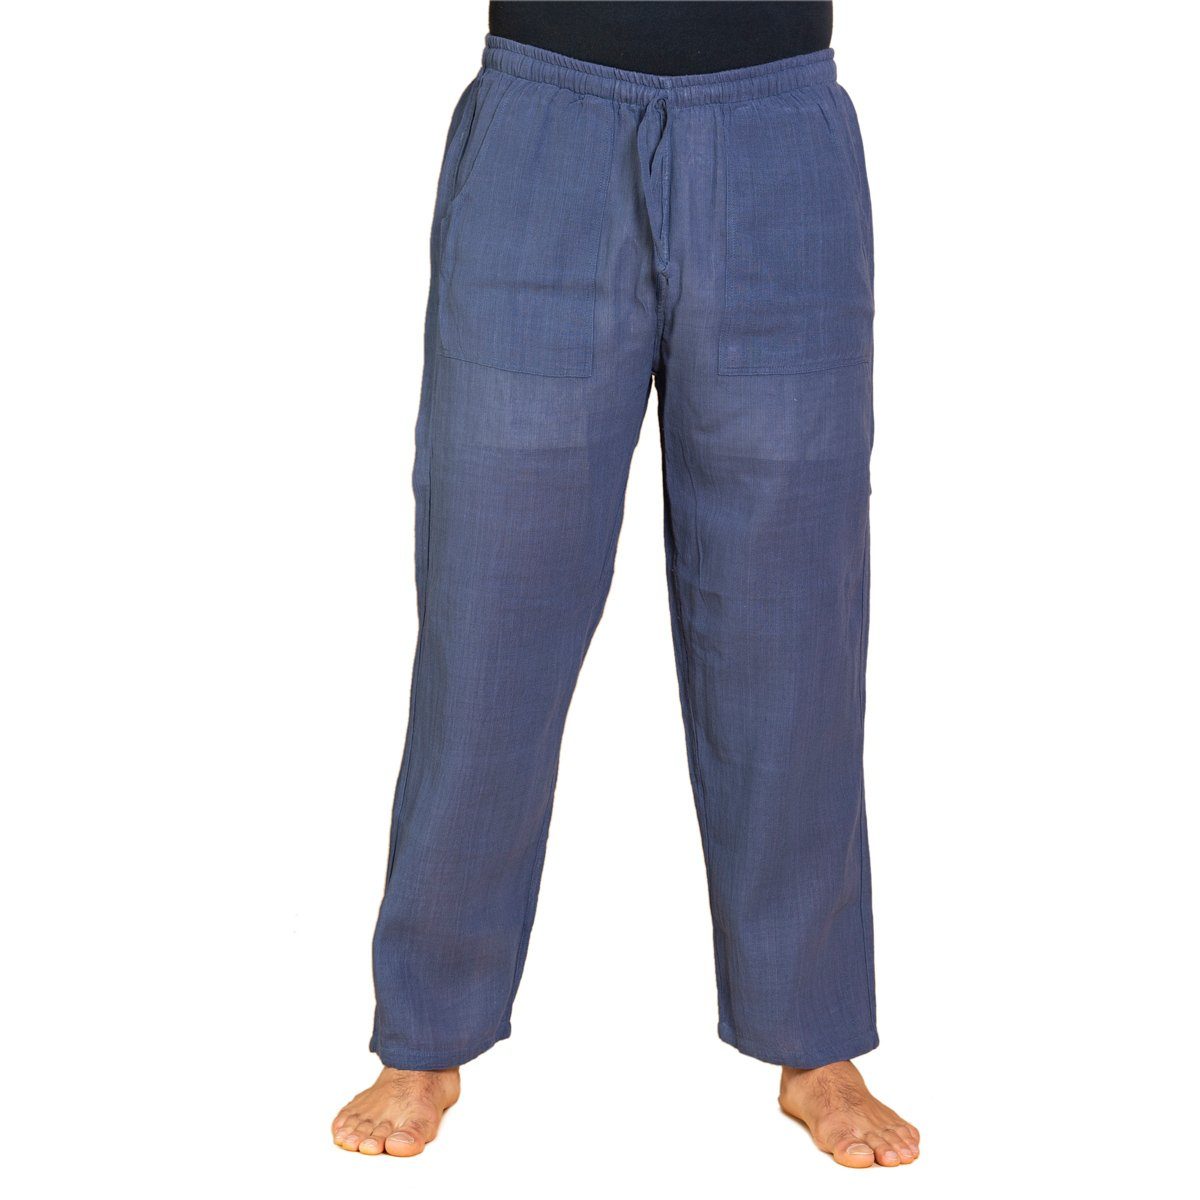 PANASIAM Wellnesshose Handgewebte Baumwollhose 'K' in verschiedenen Designs Freizeithose leger geschnitten Sommerhose Relaxhose Blau